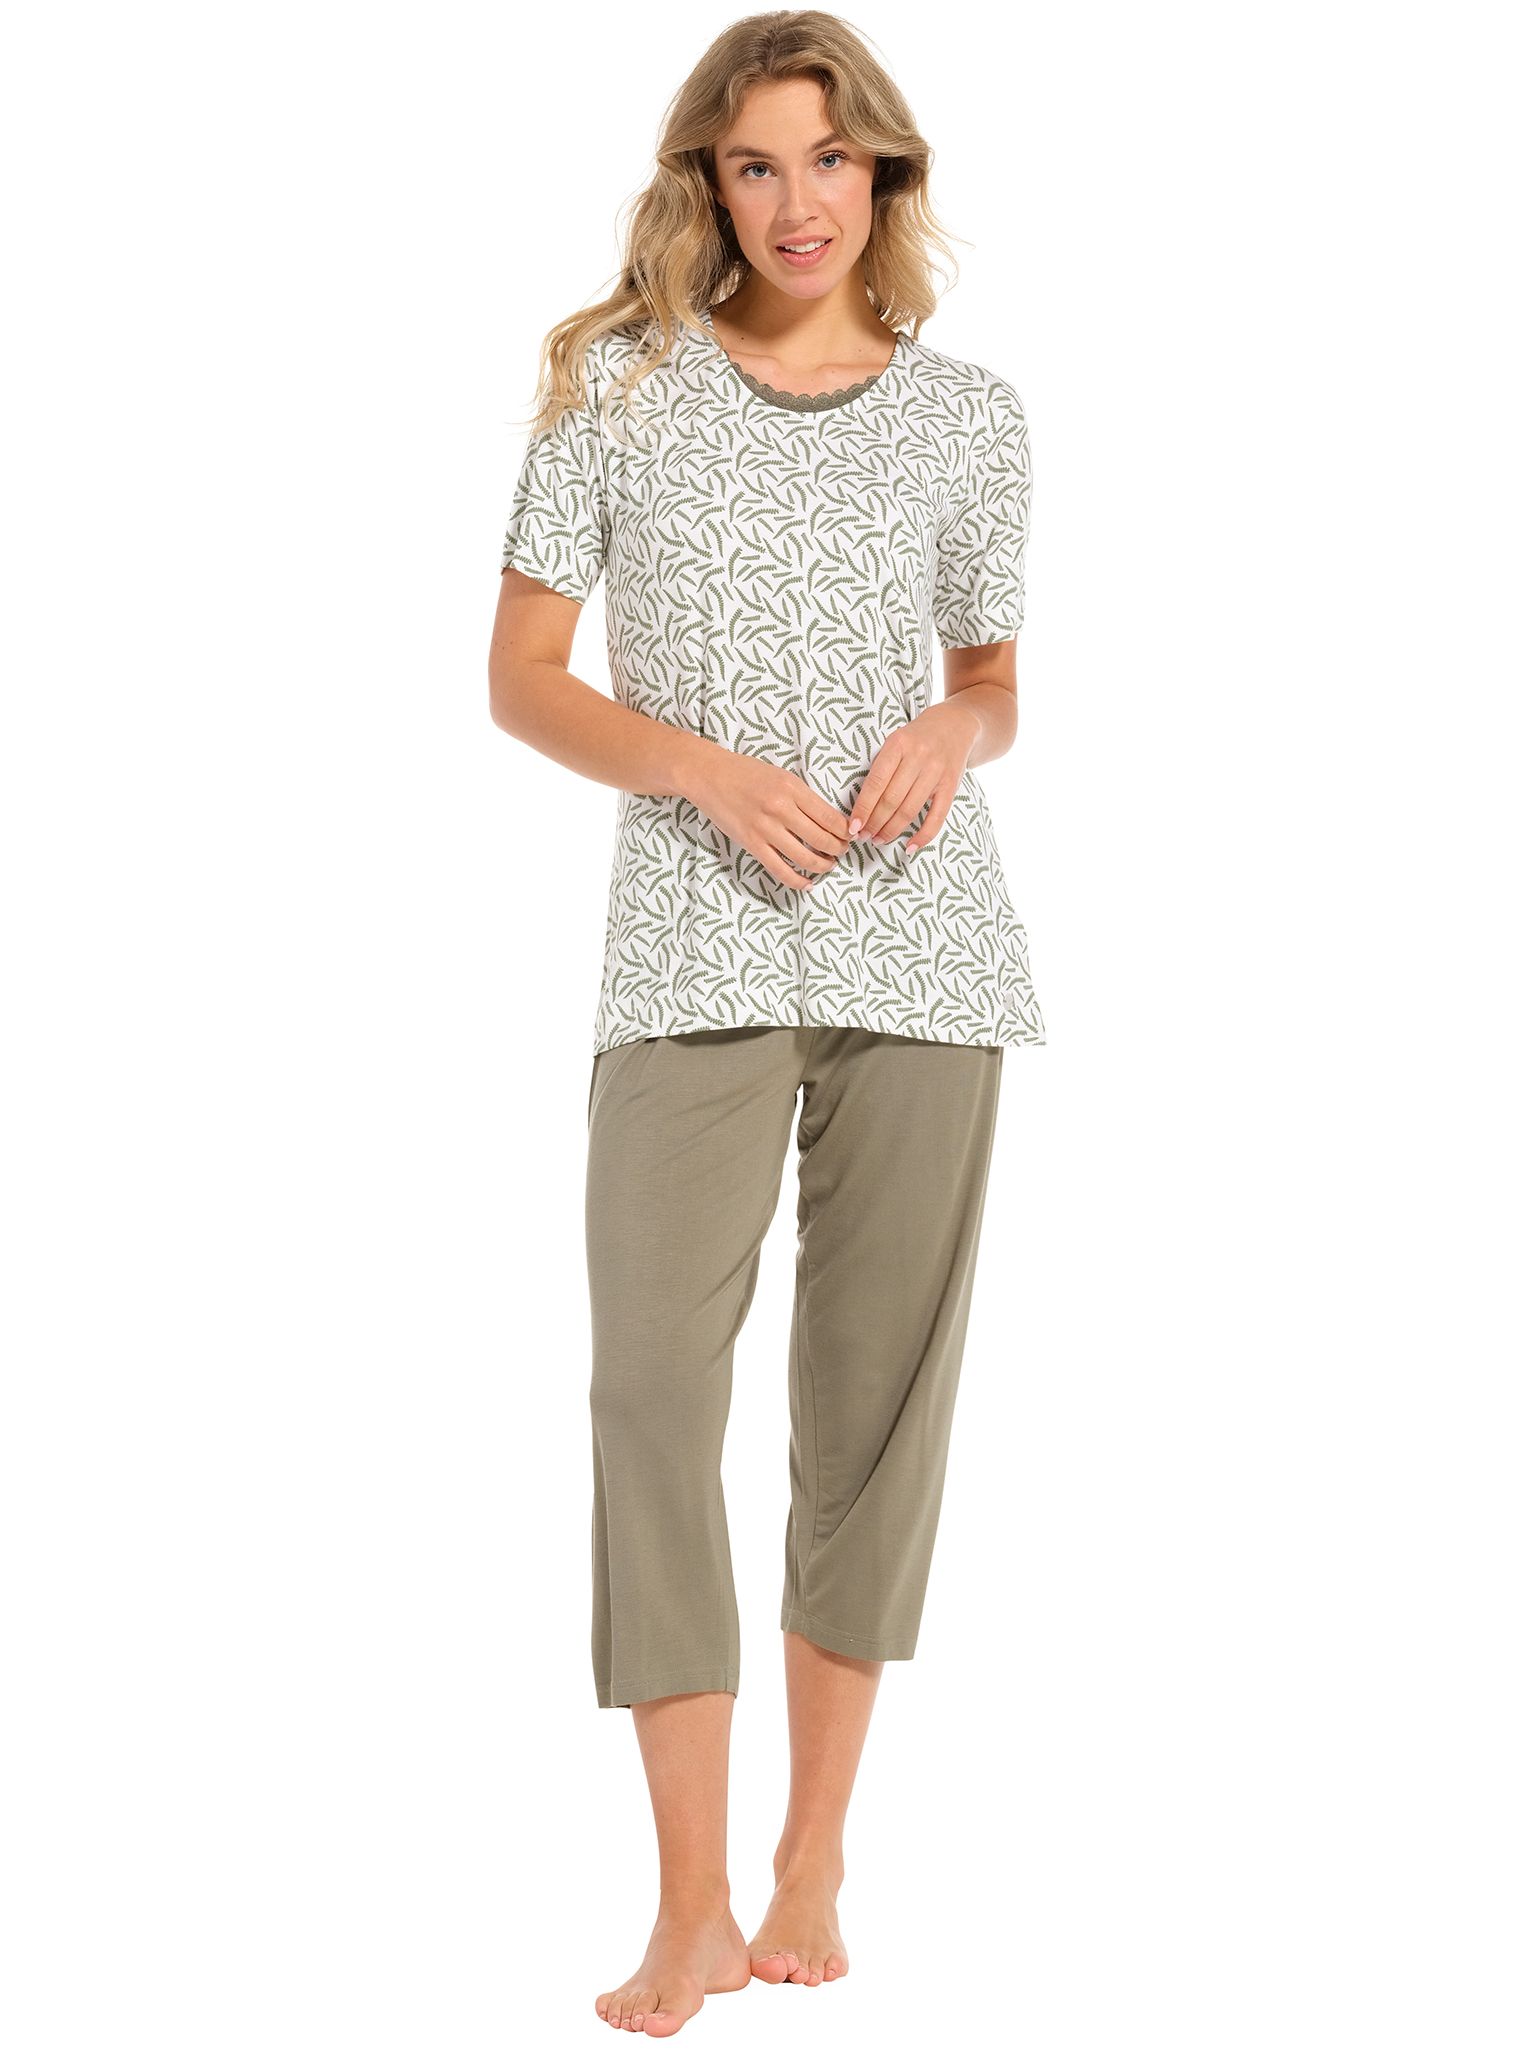 Pastunette pyjama dames - wit/donkergroen met print - 20241-148-2/720 - maat 46